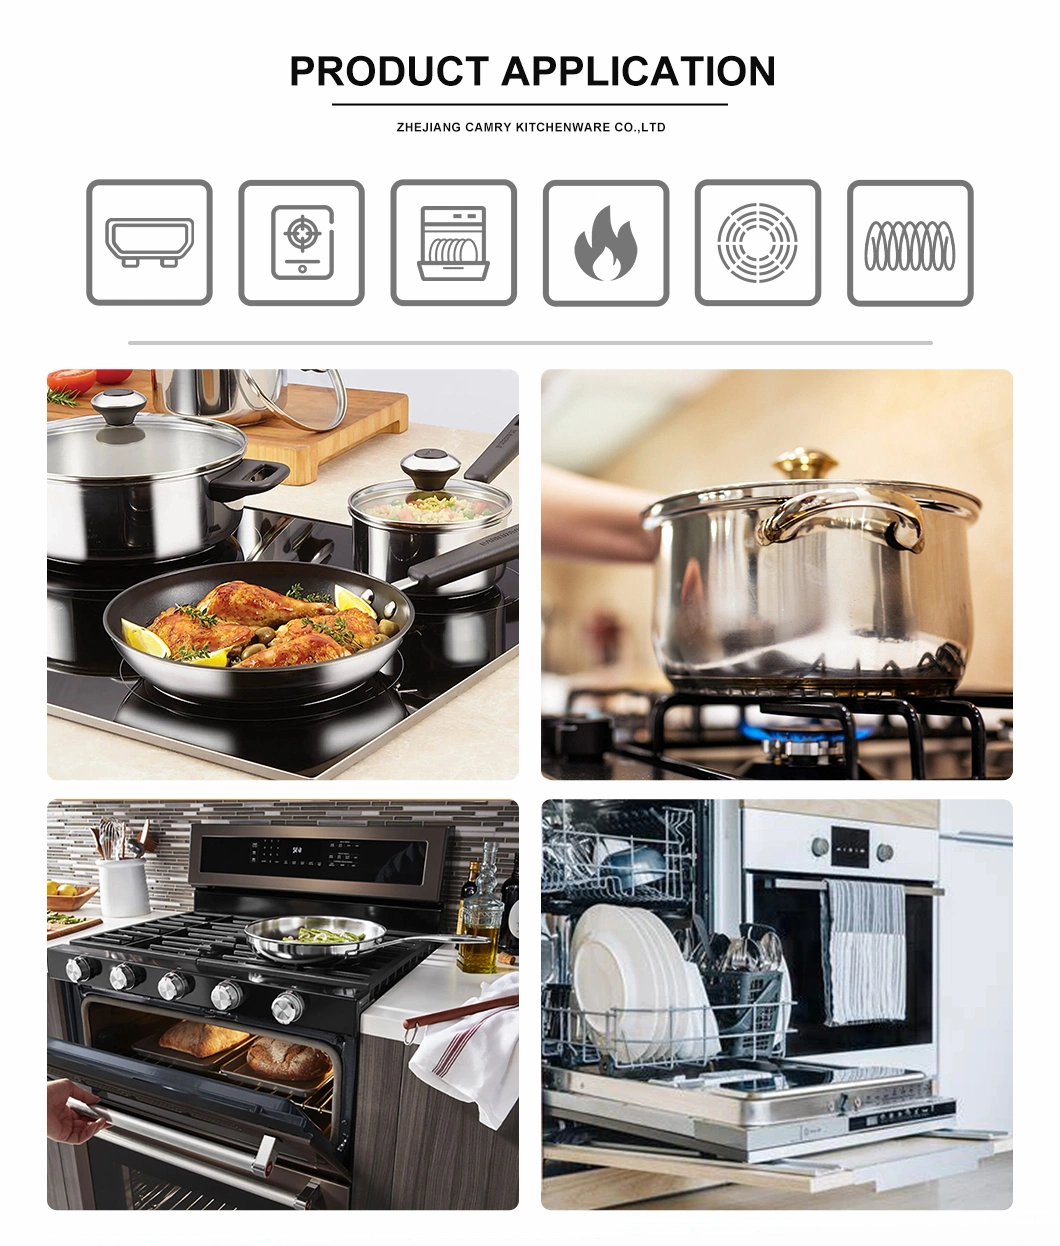 8 PCS Hard Anodized Aluminum Cookware Pots Set for Home Kitchen